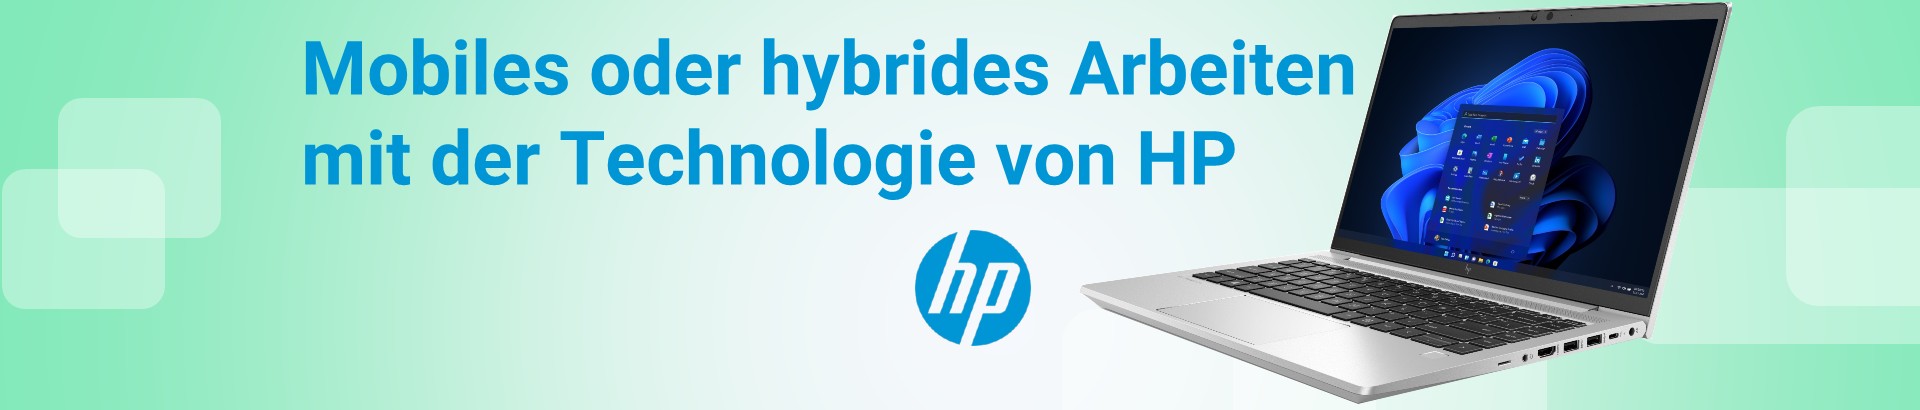 Mobiles oder hybrides Arbeiten mit HP